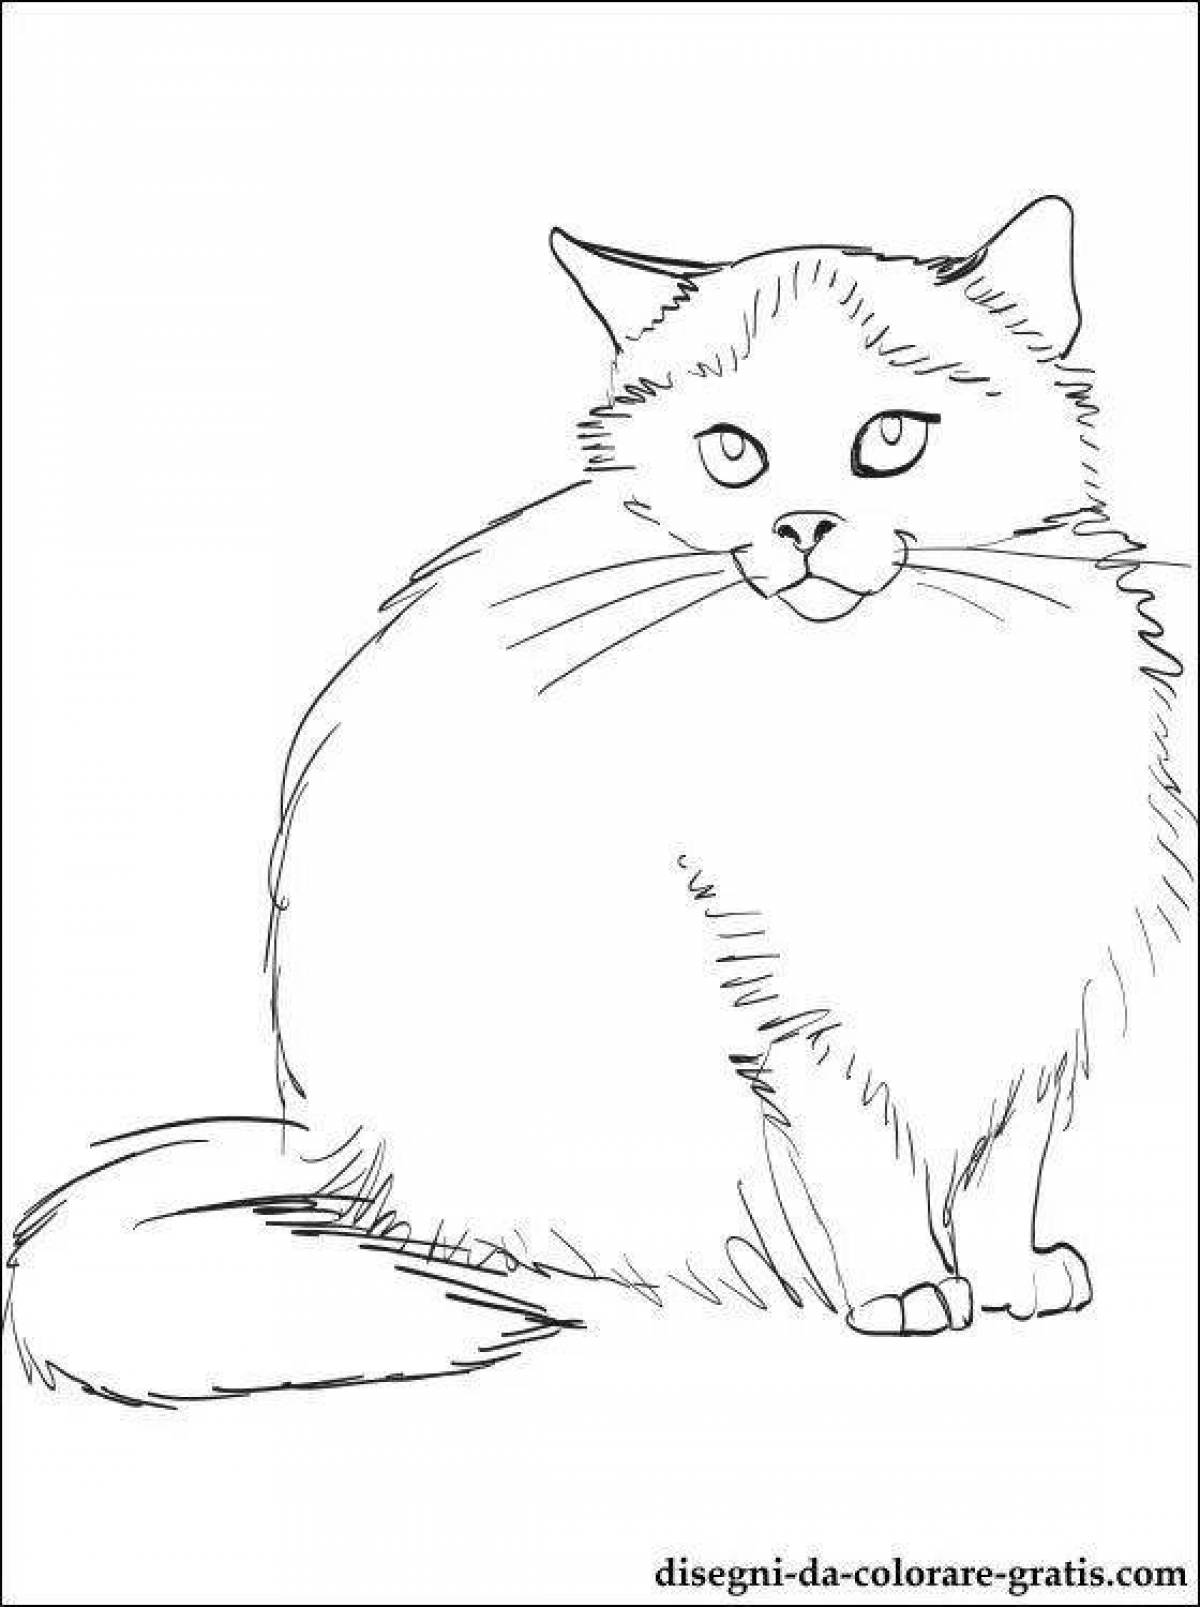 Elegant siberian cat coloring book